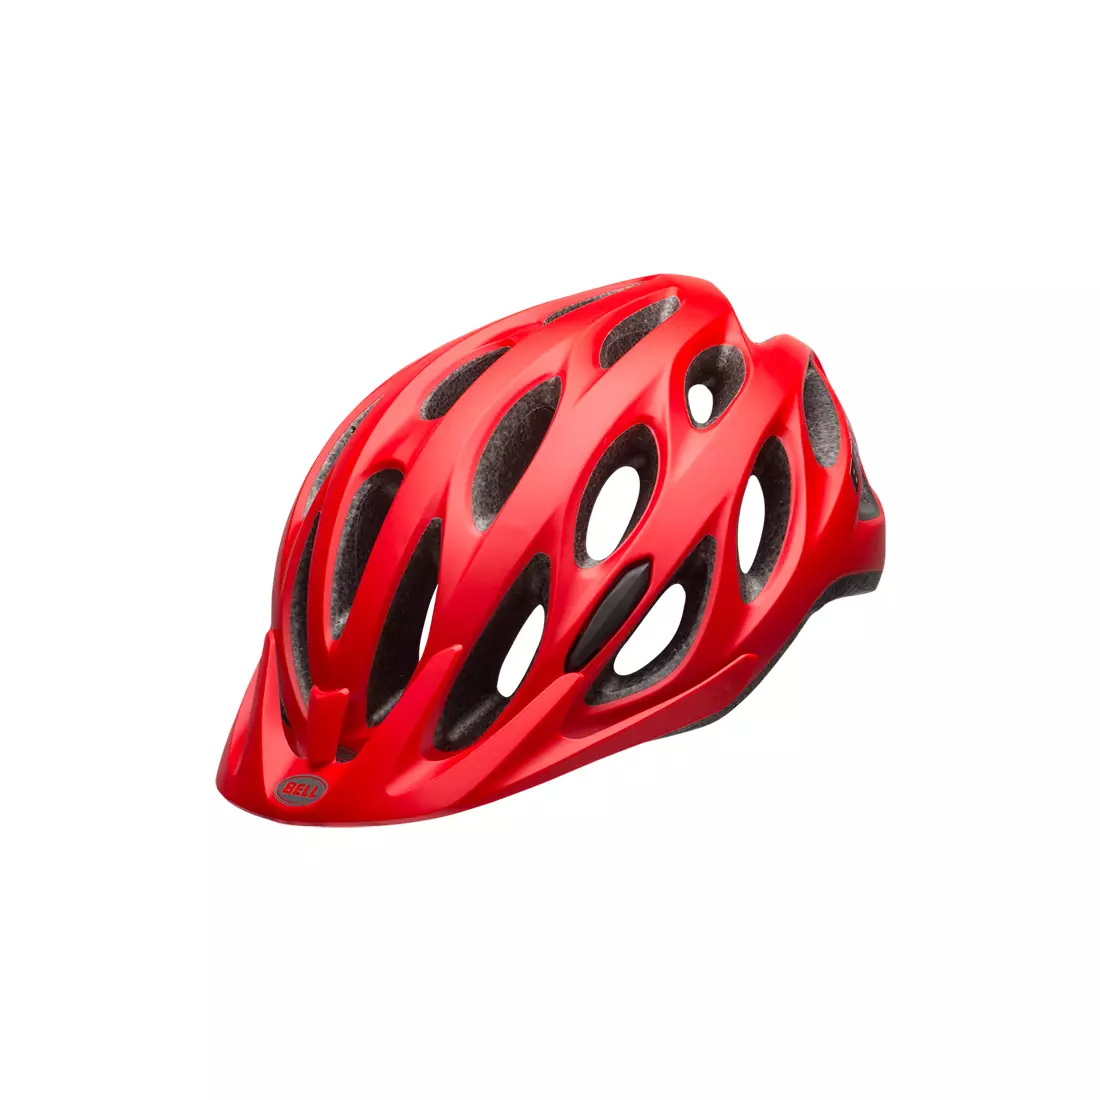 BELL TRACKER - BEL-7082029 - červená cyklistická helma